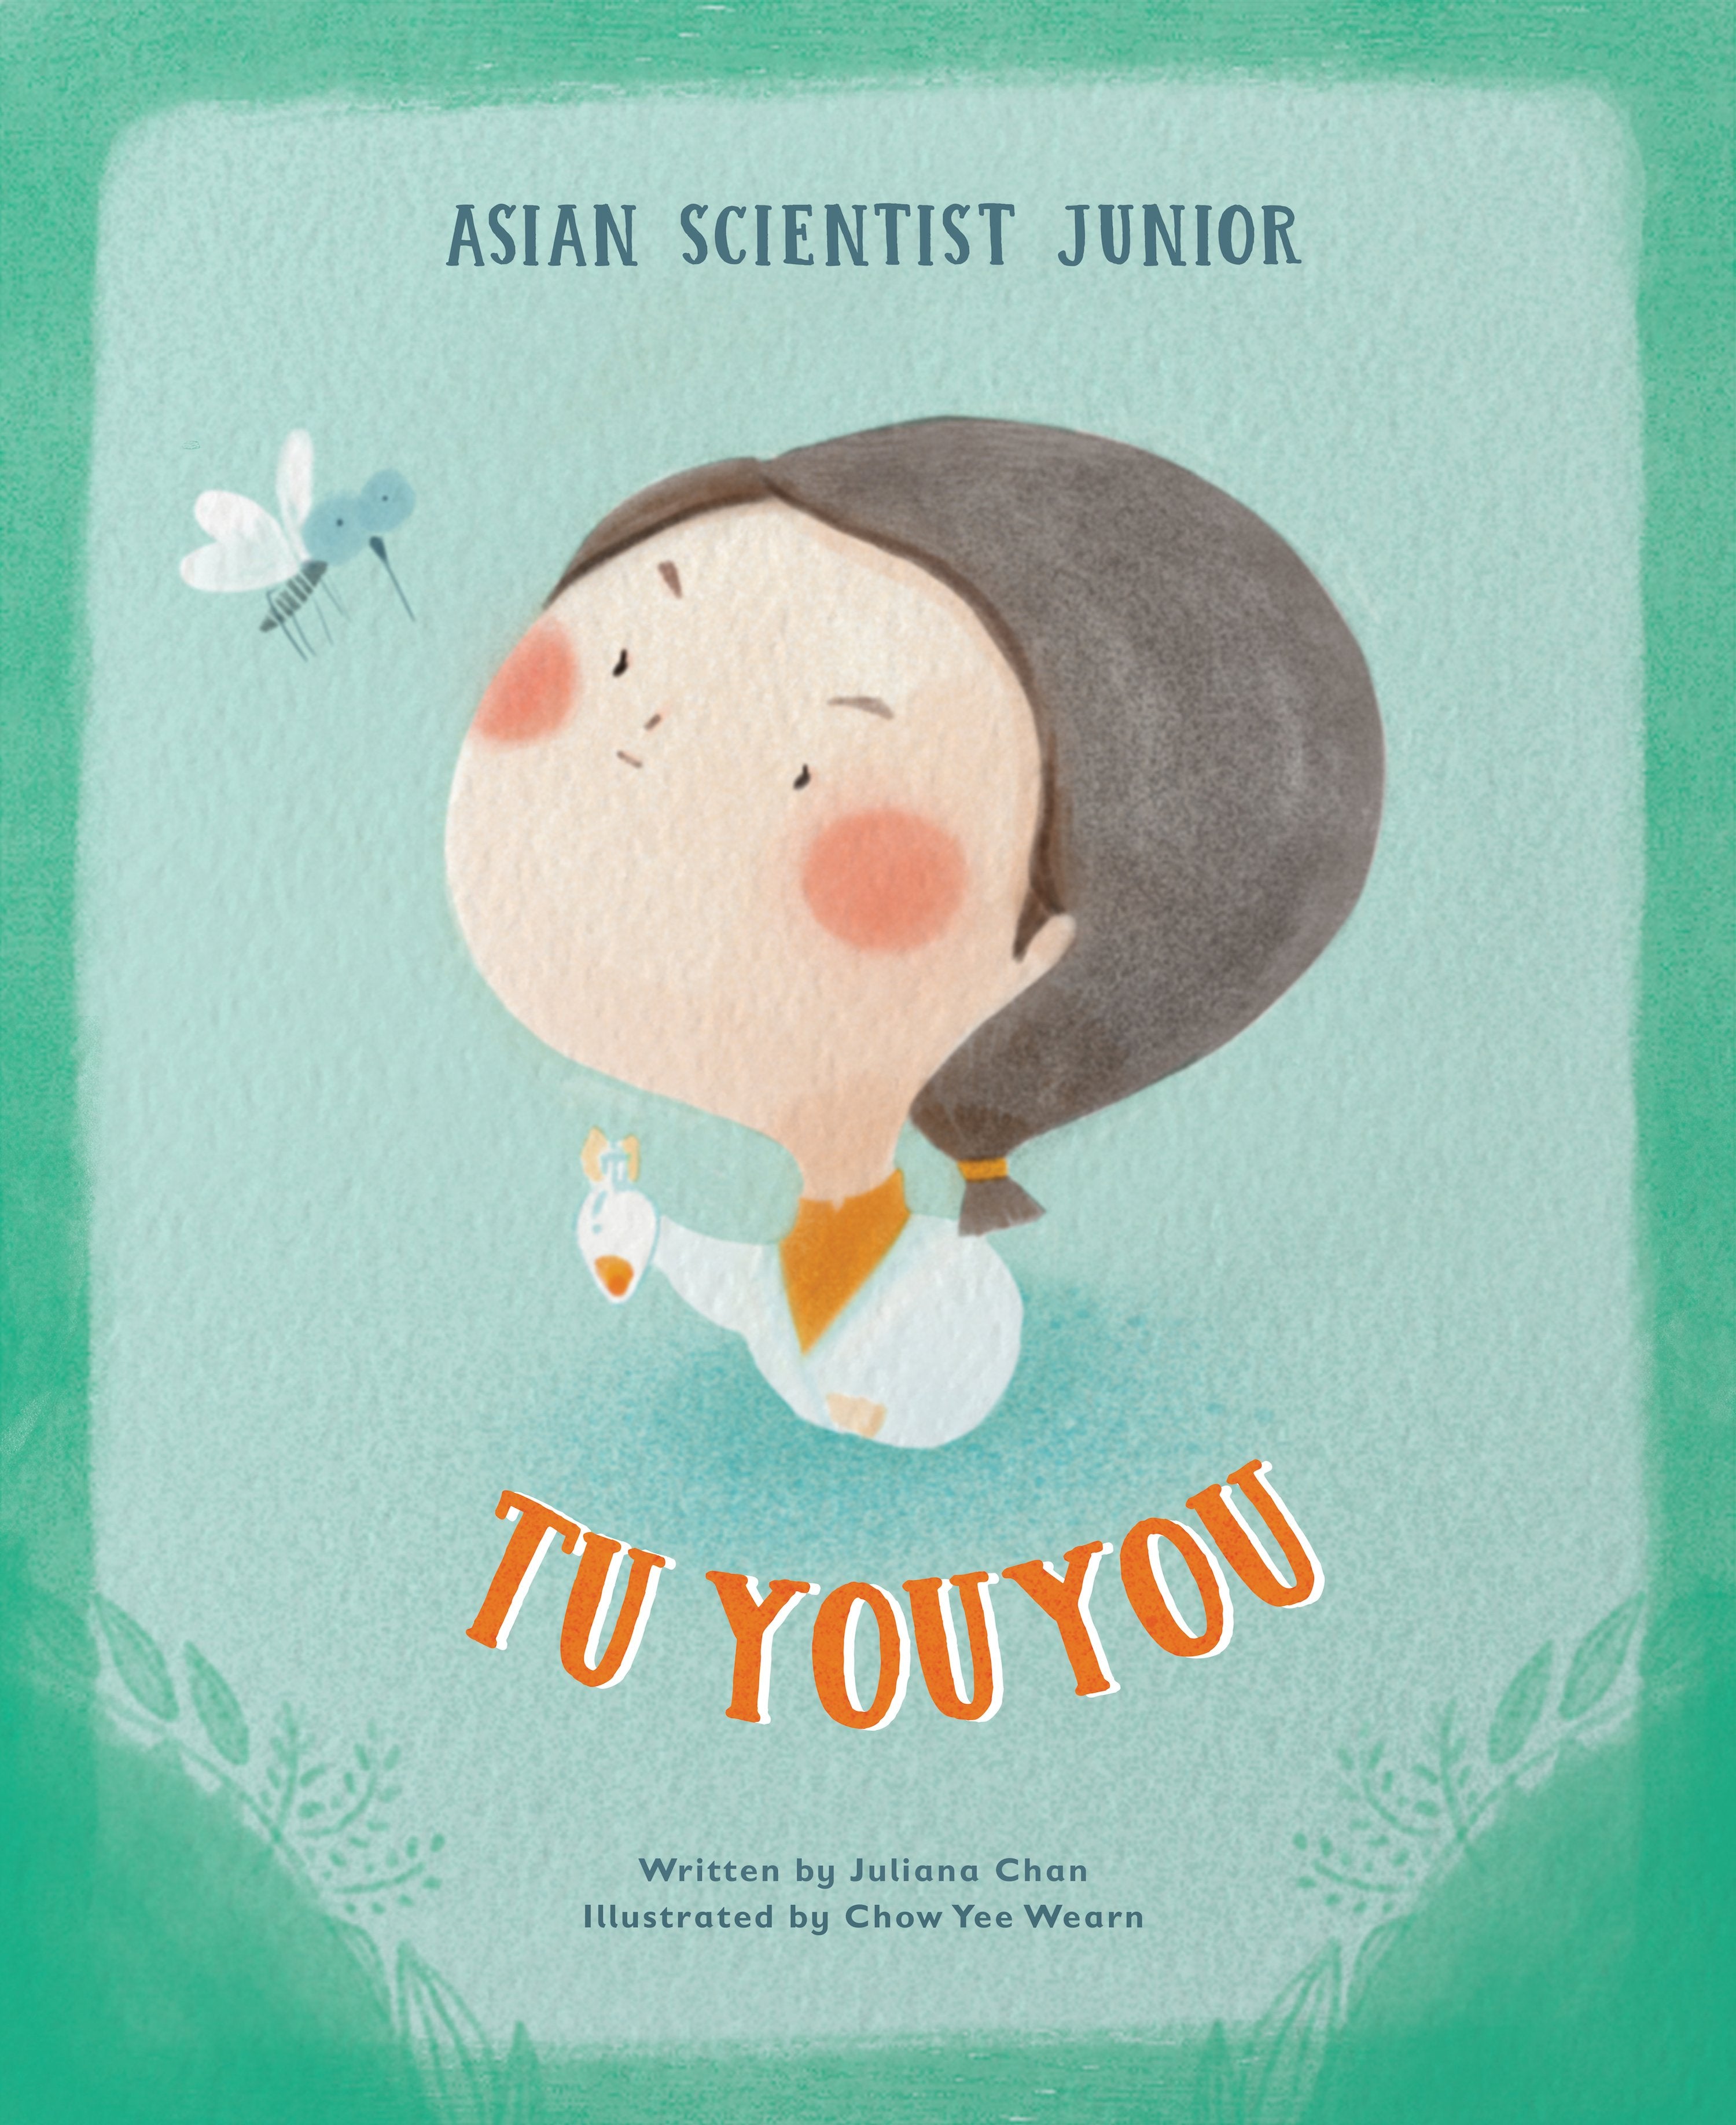 Asian Scientist Junior: Tu Youyou